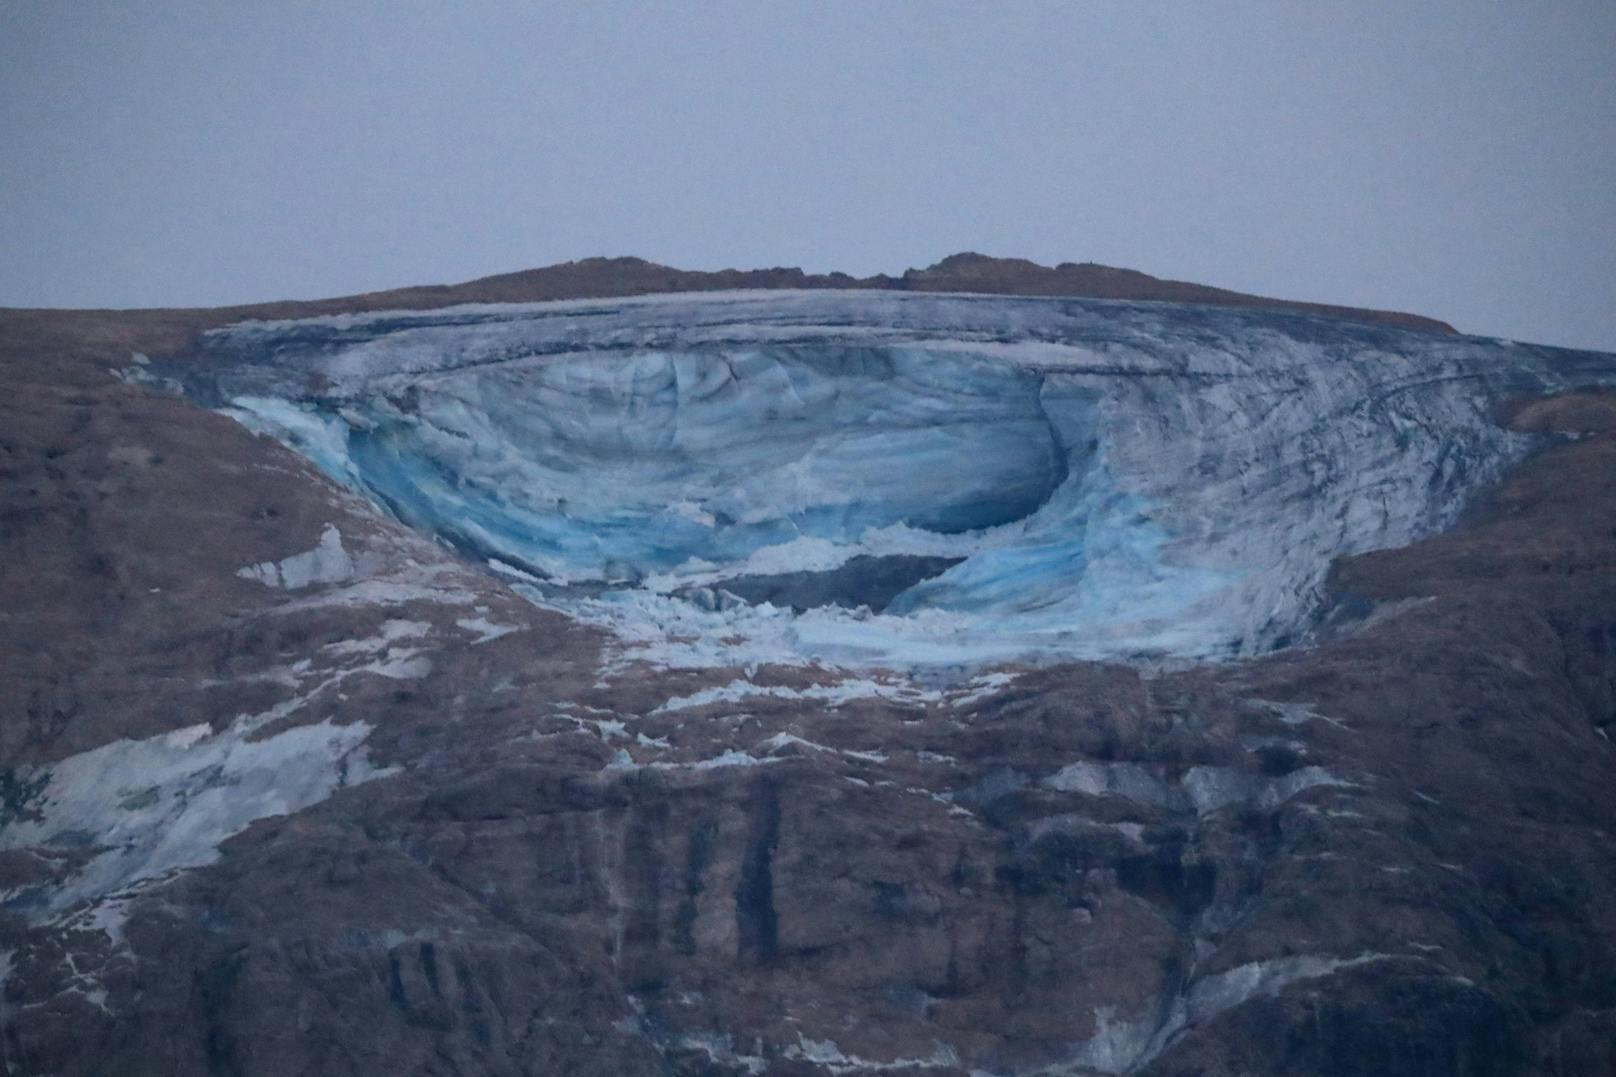 Nach dem Gletschersturz in den Dolomiten, bei dem sich eine Eisplatte gelöst hatte, sind nach wie vor 20 Menschen vermisst. Sechs Todesfälle wurden bisher bestätigt.